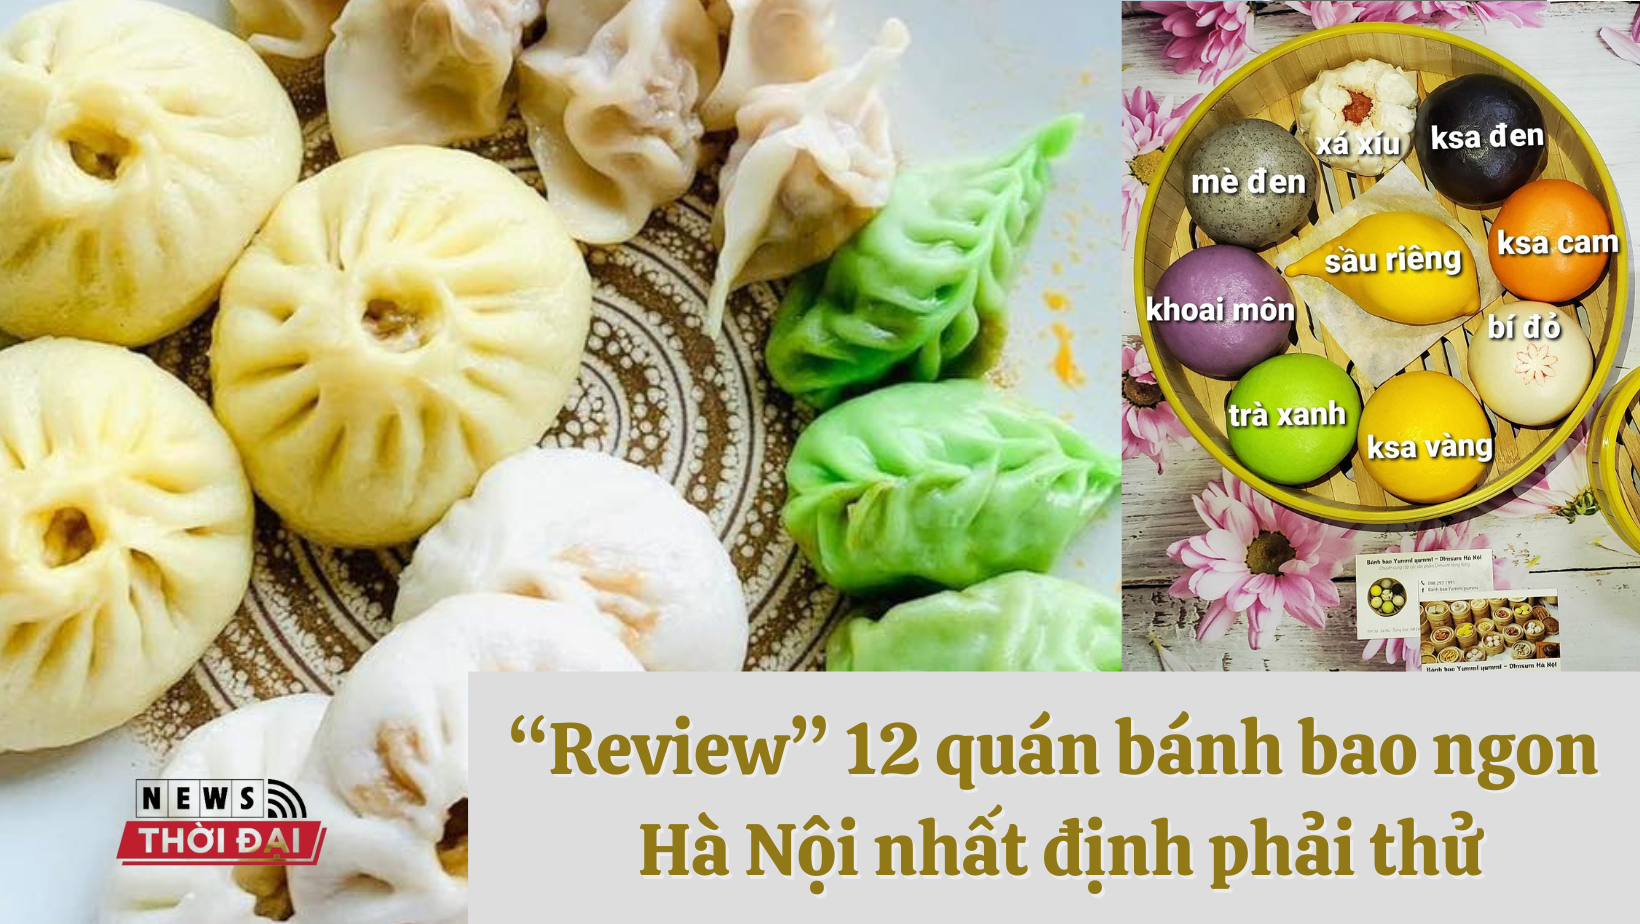 “Review” 12 quán bánh bao ngon Hà Nội nhất định phải thử